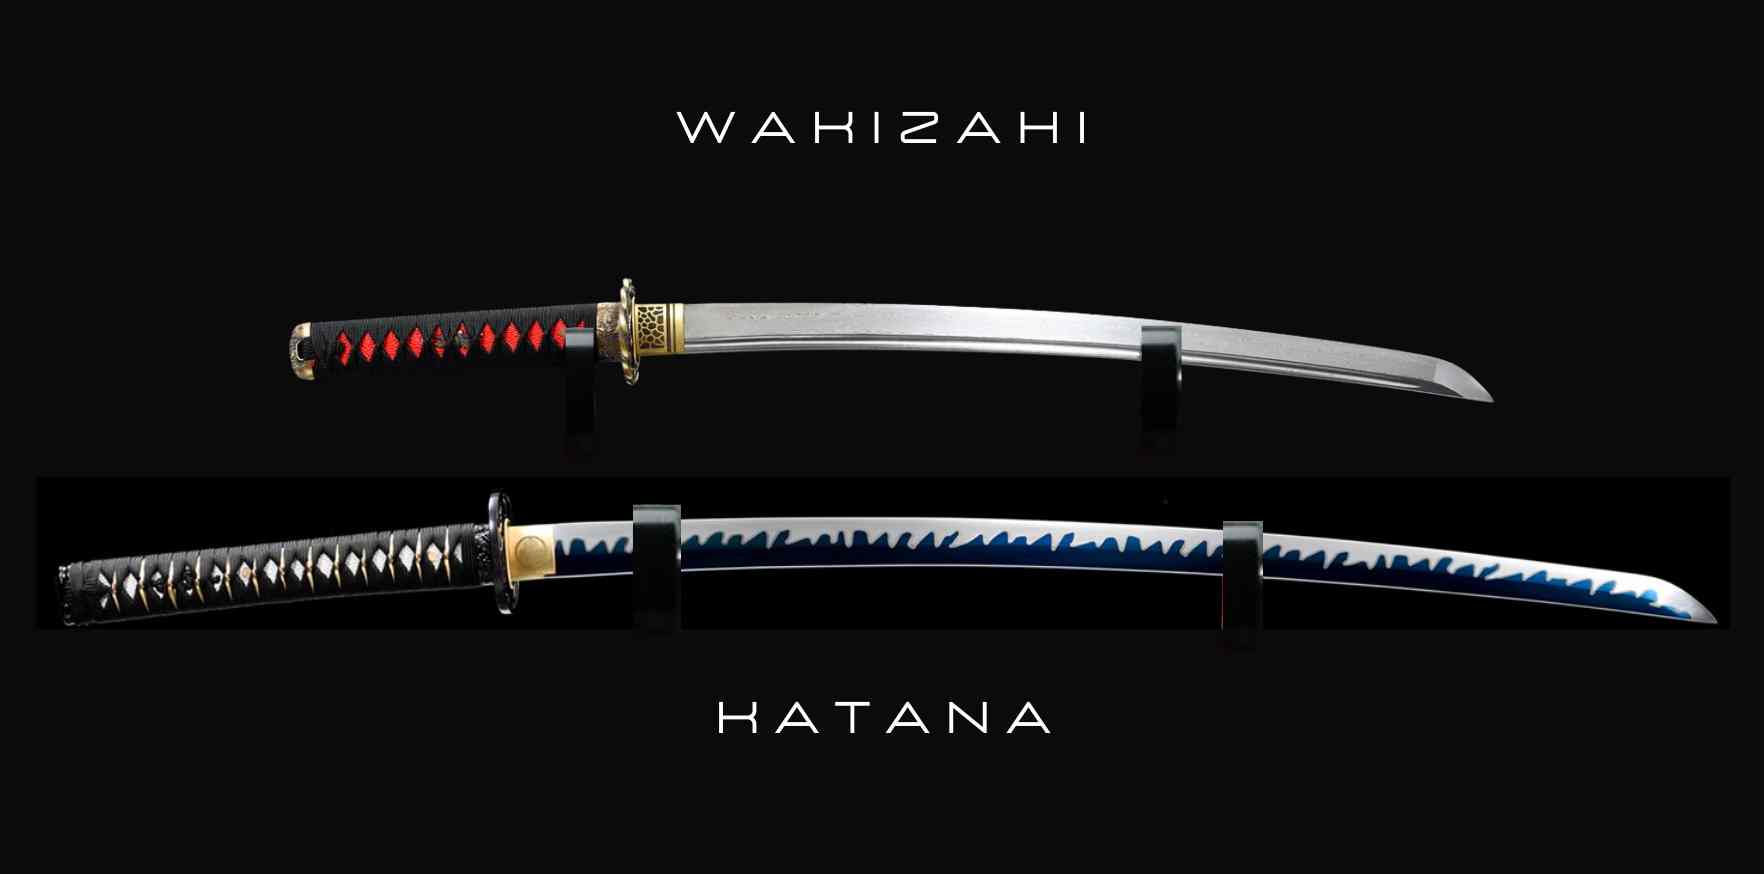 wakizashi vs katana